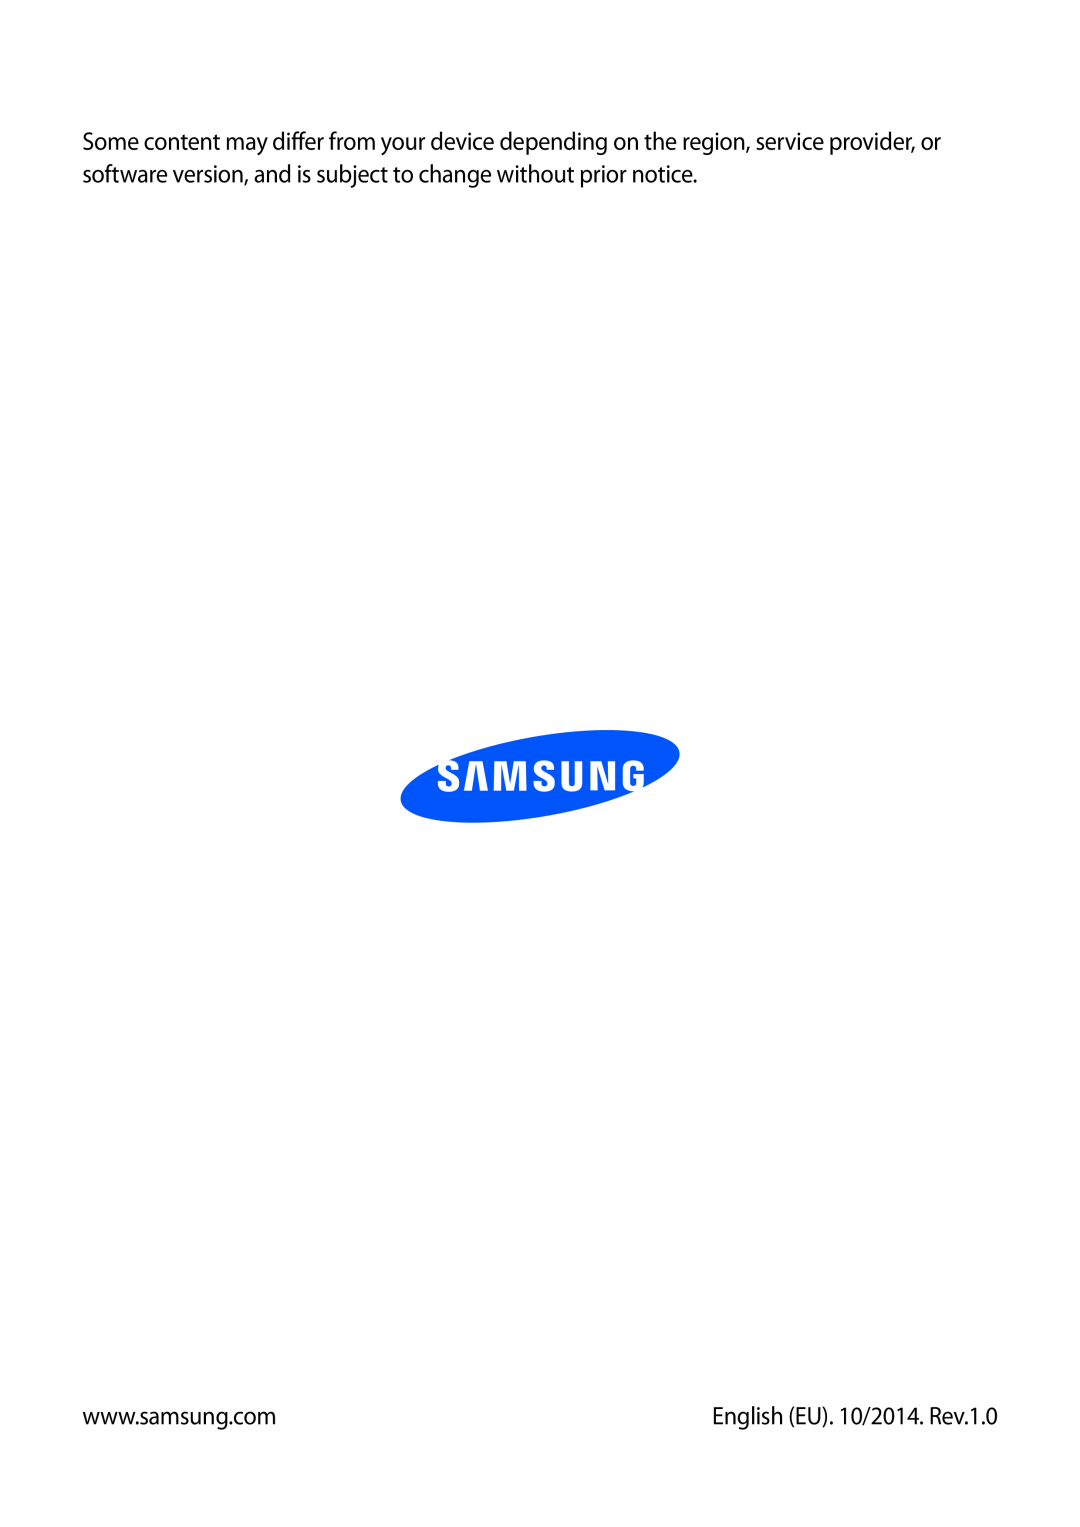 Samsung GT-I9305MBDVGR, GT-I9305OKDTMN, GT-I9305RWDCOS, GT-I9305RWDDTM, GT-I9305OKDTPH manual English EU. 10/2014. Rev.1.0 